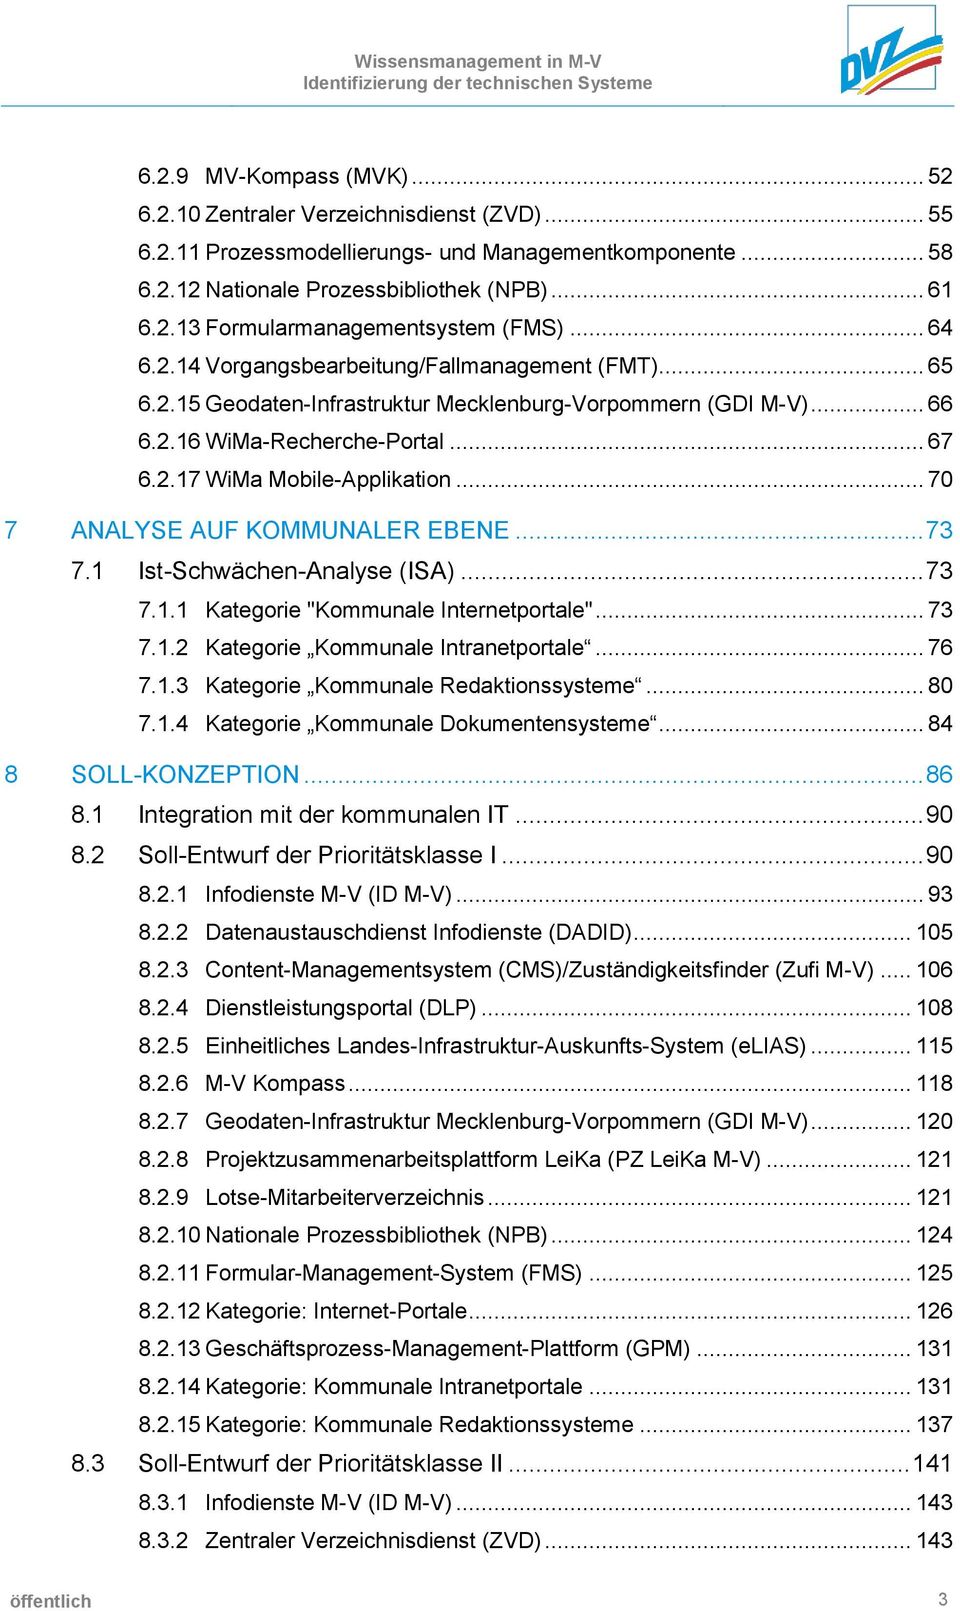 .. 70 7 ANALYSE AUF KOMMUNALER EBENE... 73 7.1 Ist-Schwächen-Analyse (ISA)... 73 7.1.1 Kategorie "Kommunale Internetportale"... 73 7.1.2 Kategorie Kommunale Intranetportale... 76 7.1.3 Kategorie Kommunale Redaktionssysteme.